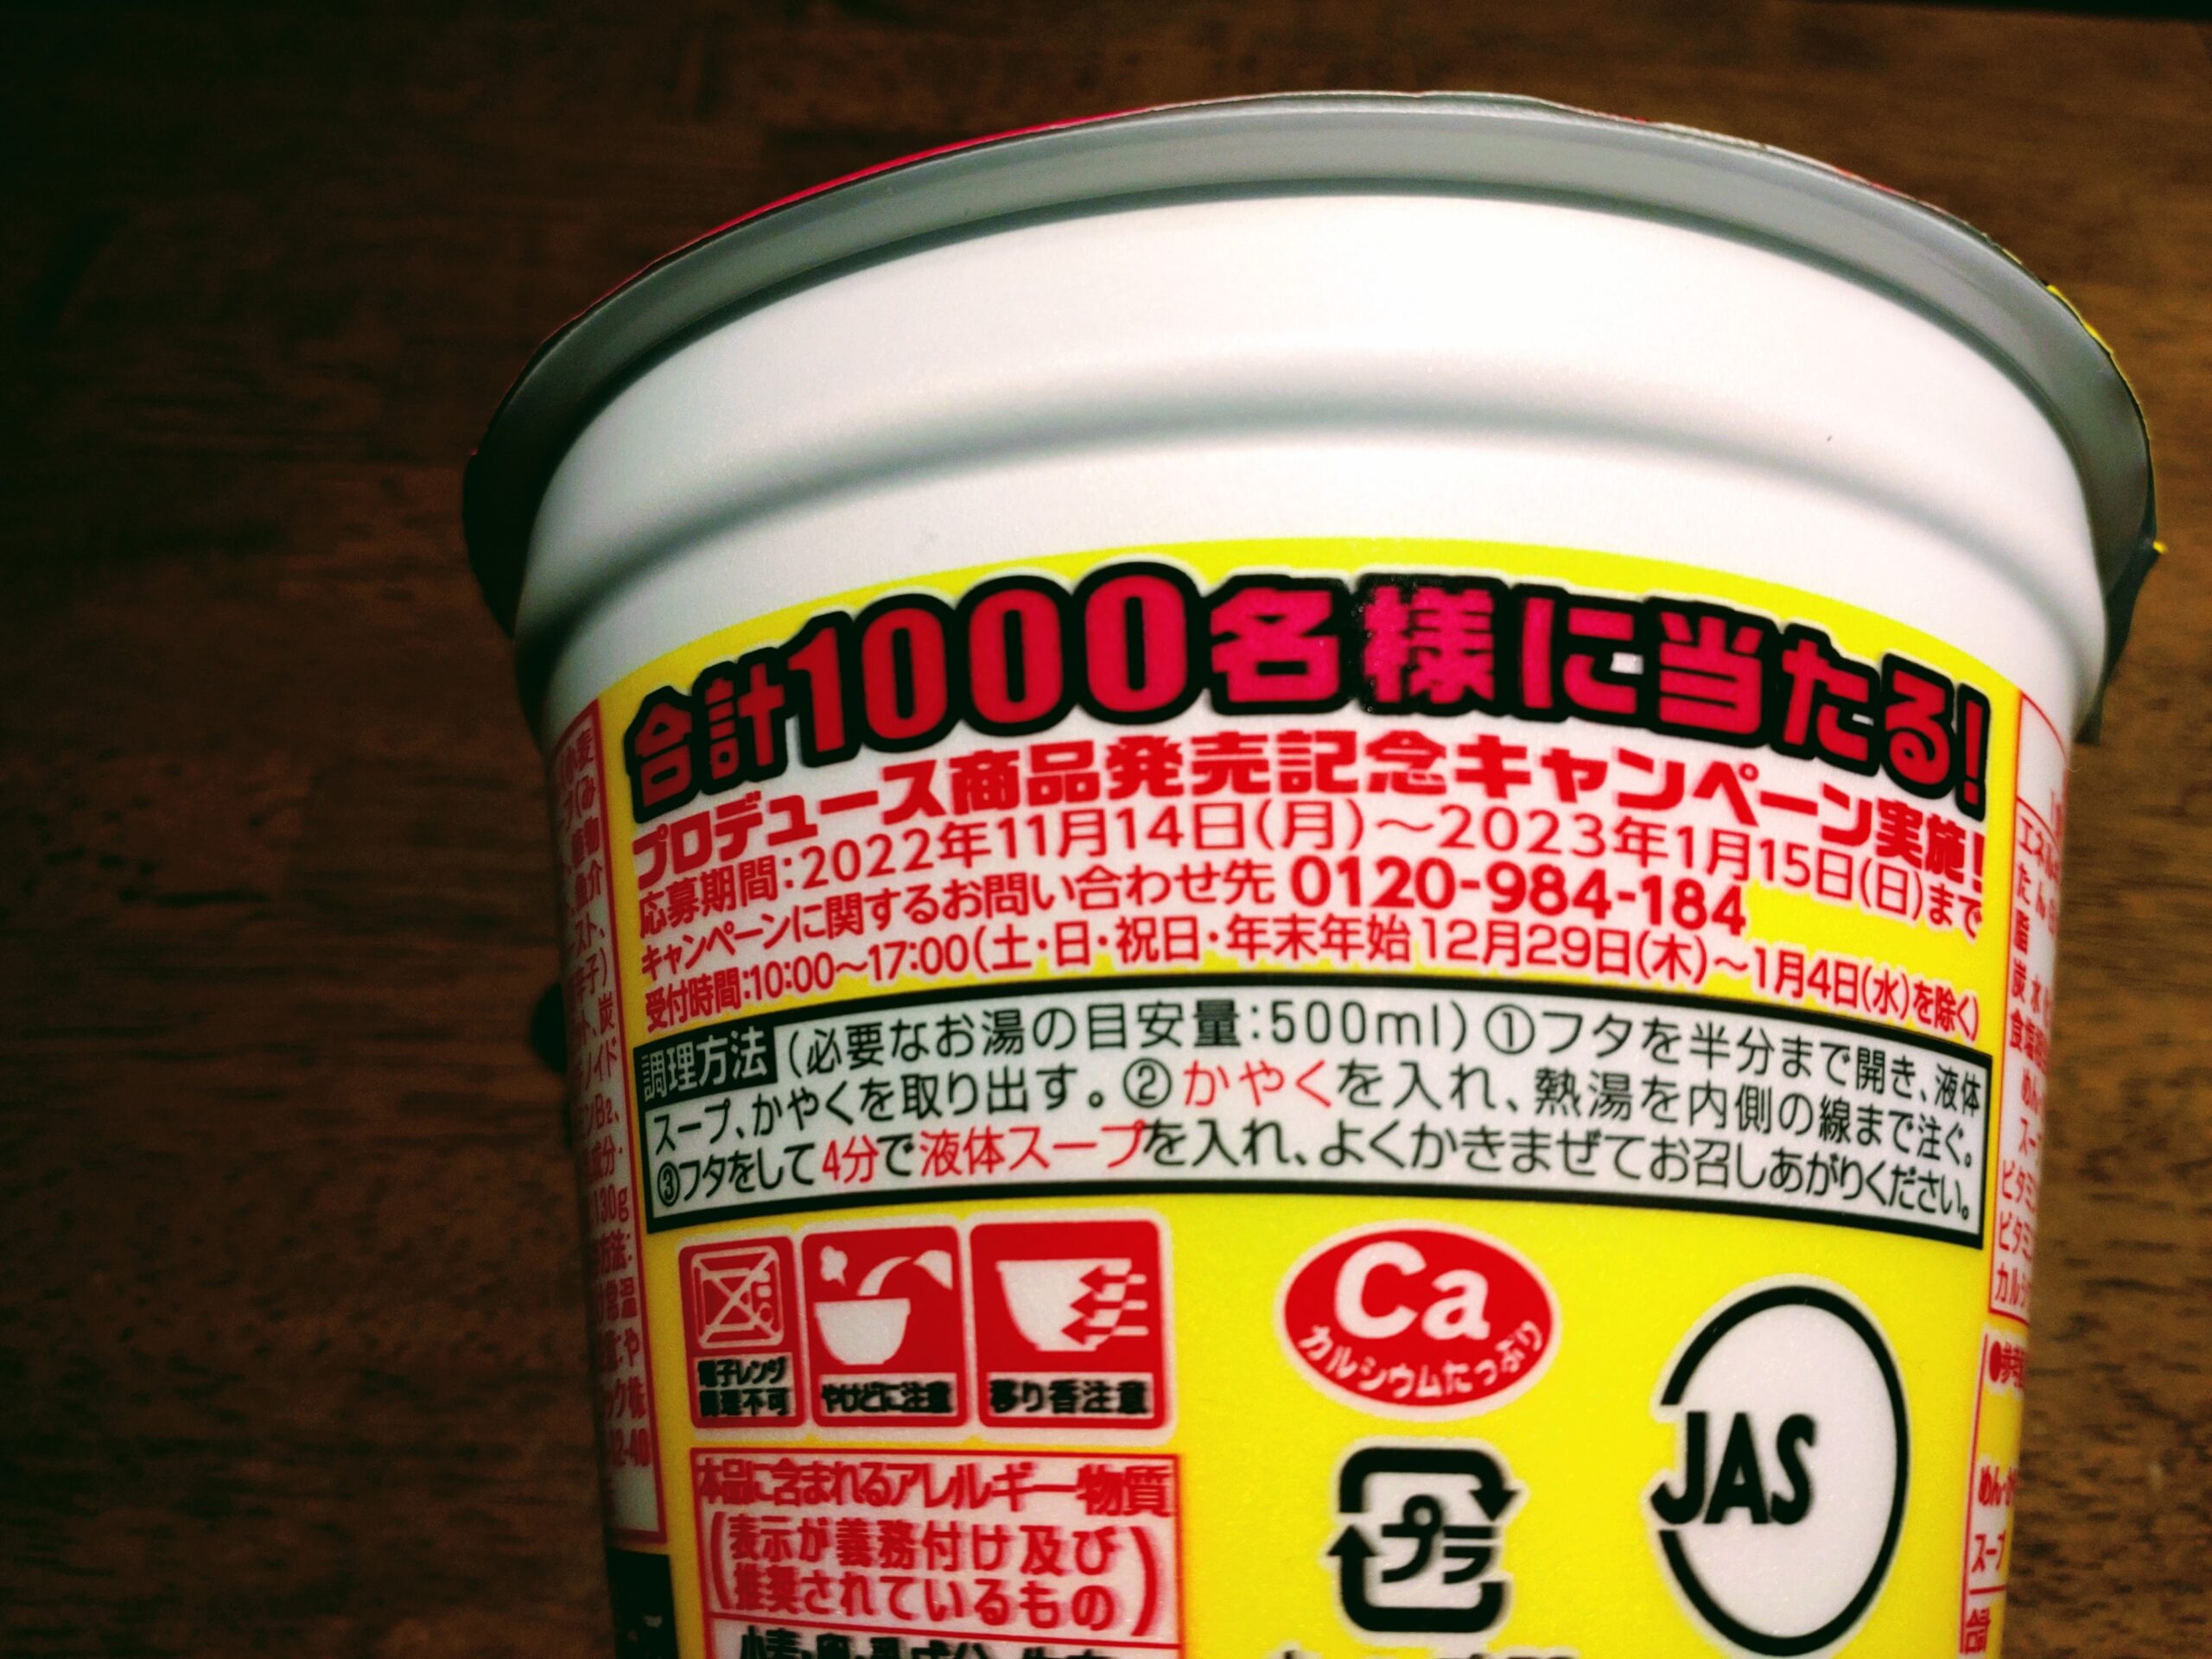 スーパーカップ1.5倍×EXIT ジンジャー豚味噌味ラーメンのキャンペーン